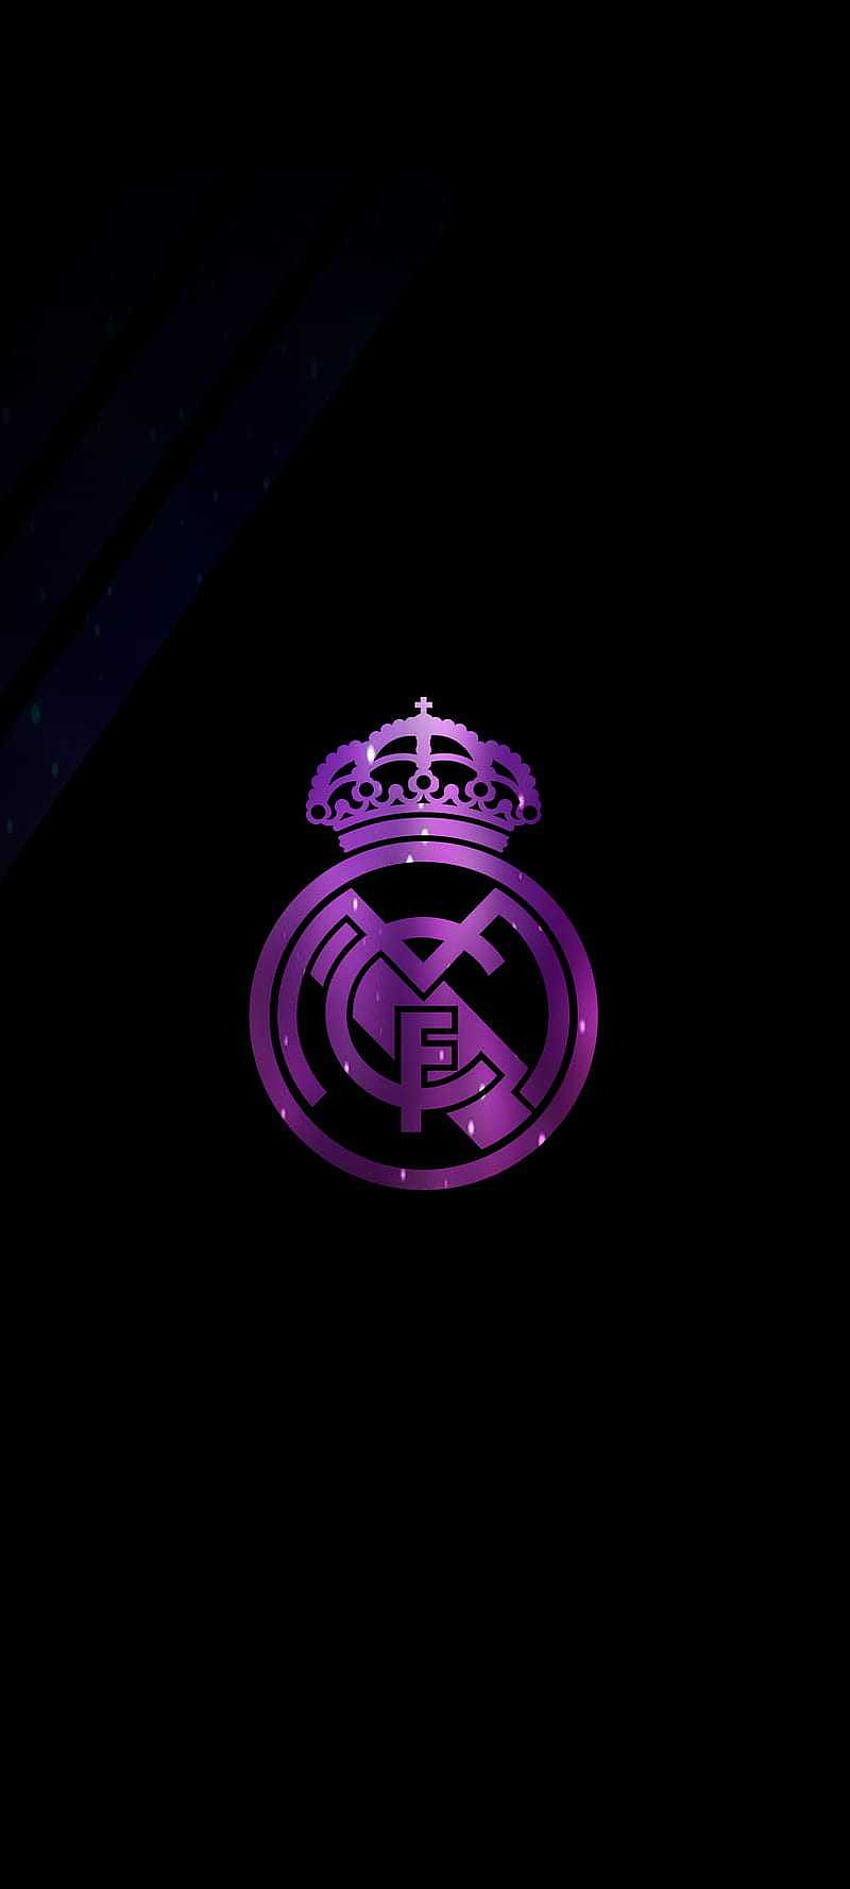 Real Madrid, Adidas Real Madrid wallpaper ponsel HD